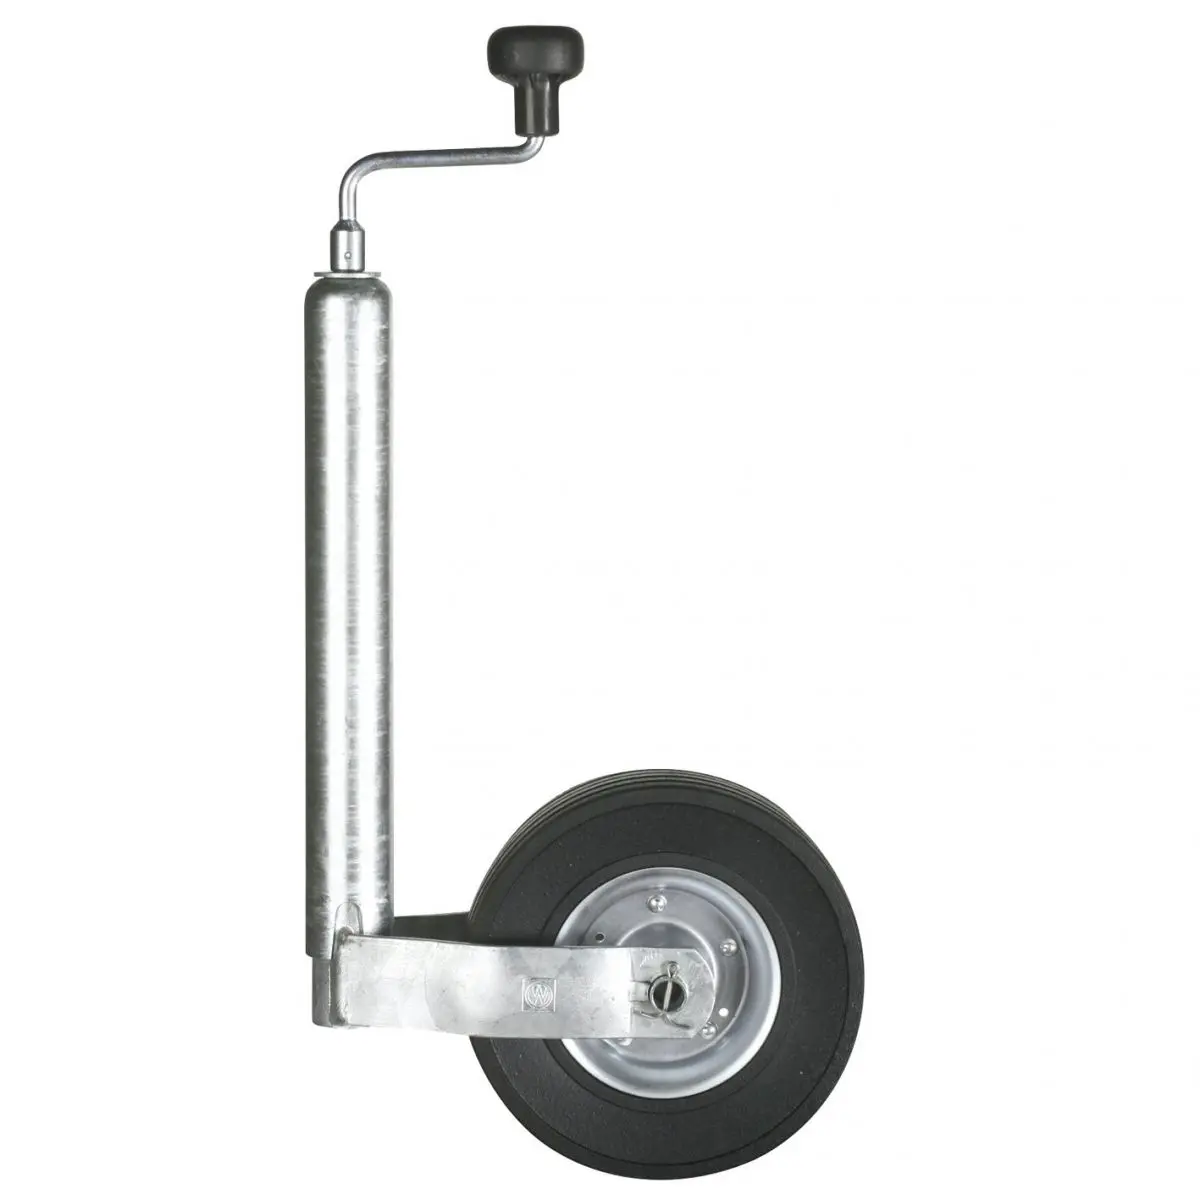 Ťažné koleso - 225 x 70 mm, plná guma, oceľový ráfik